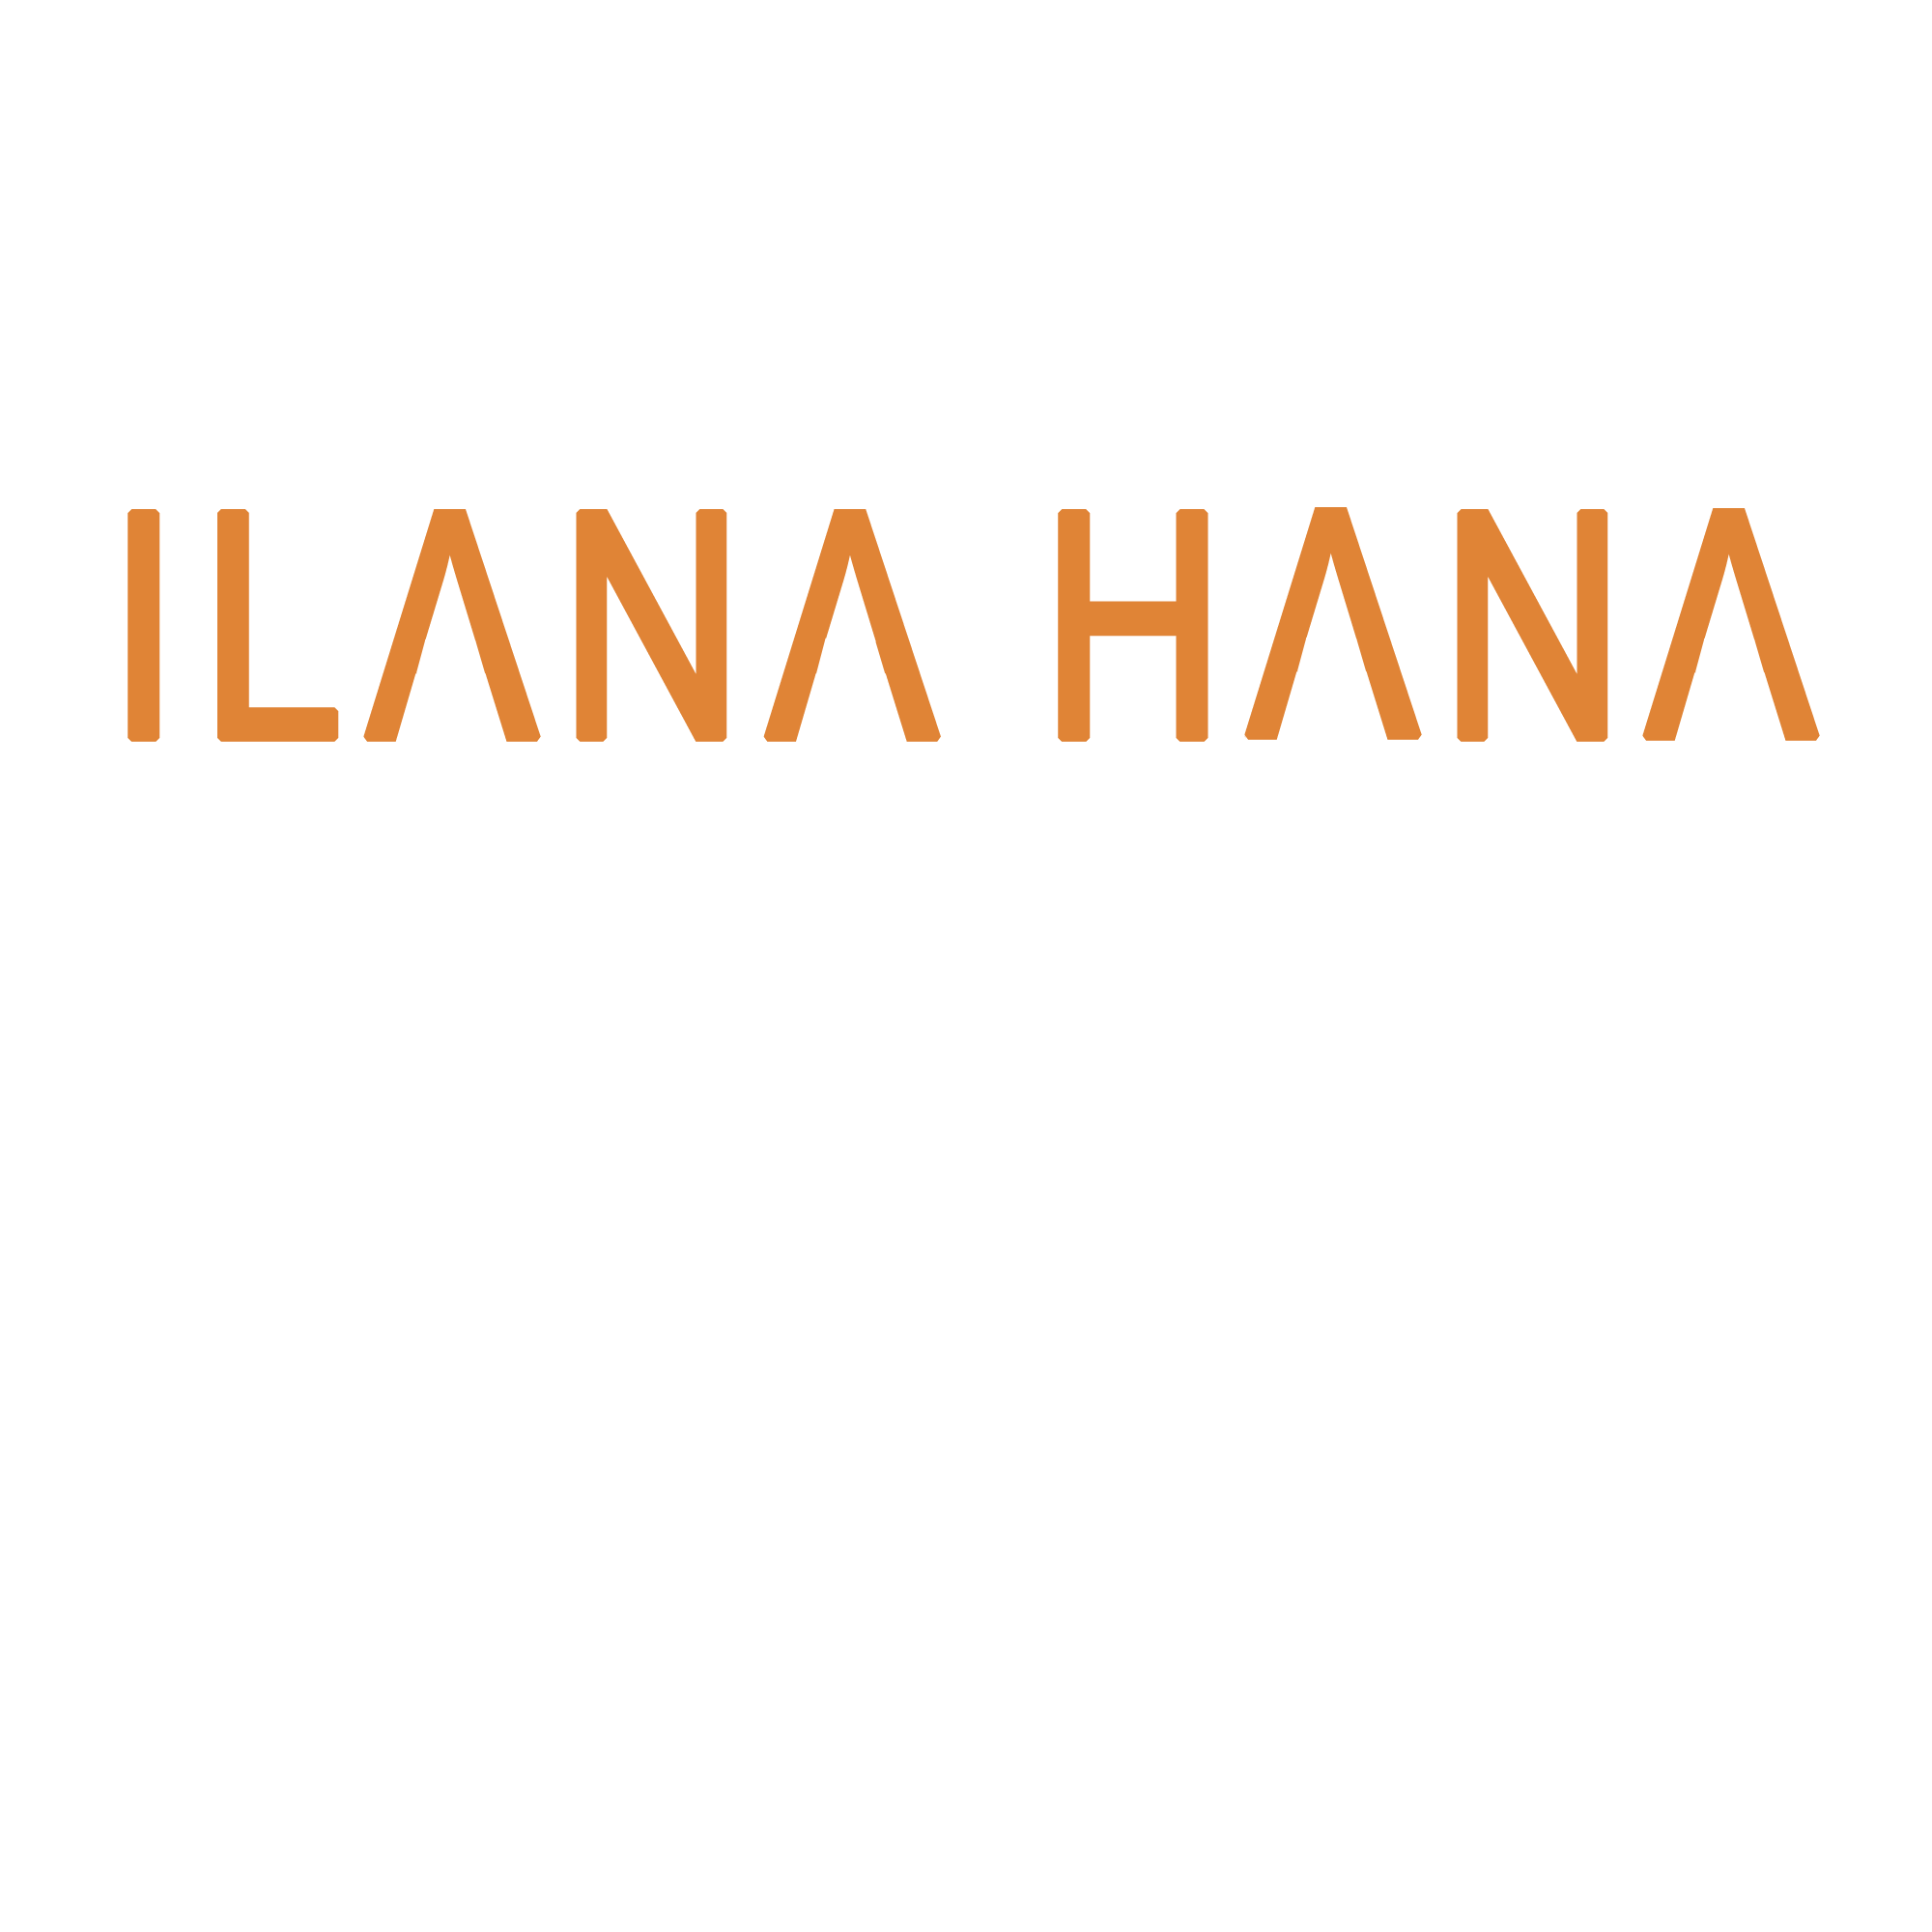 Ilana Hana